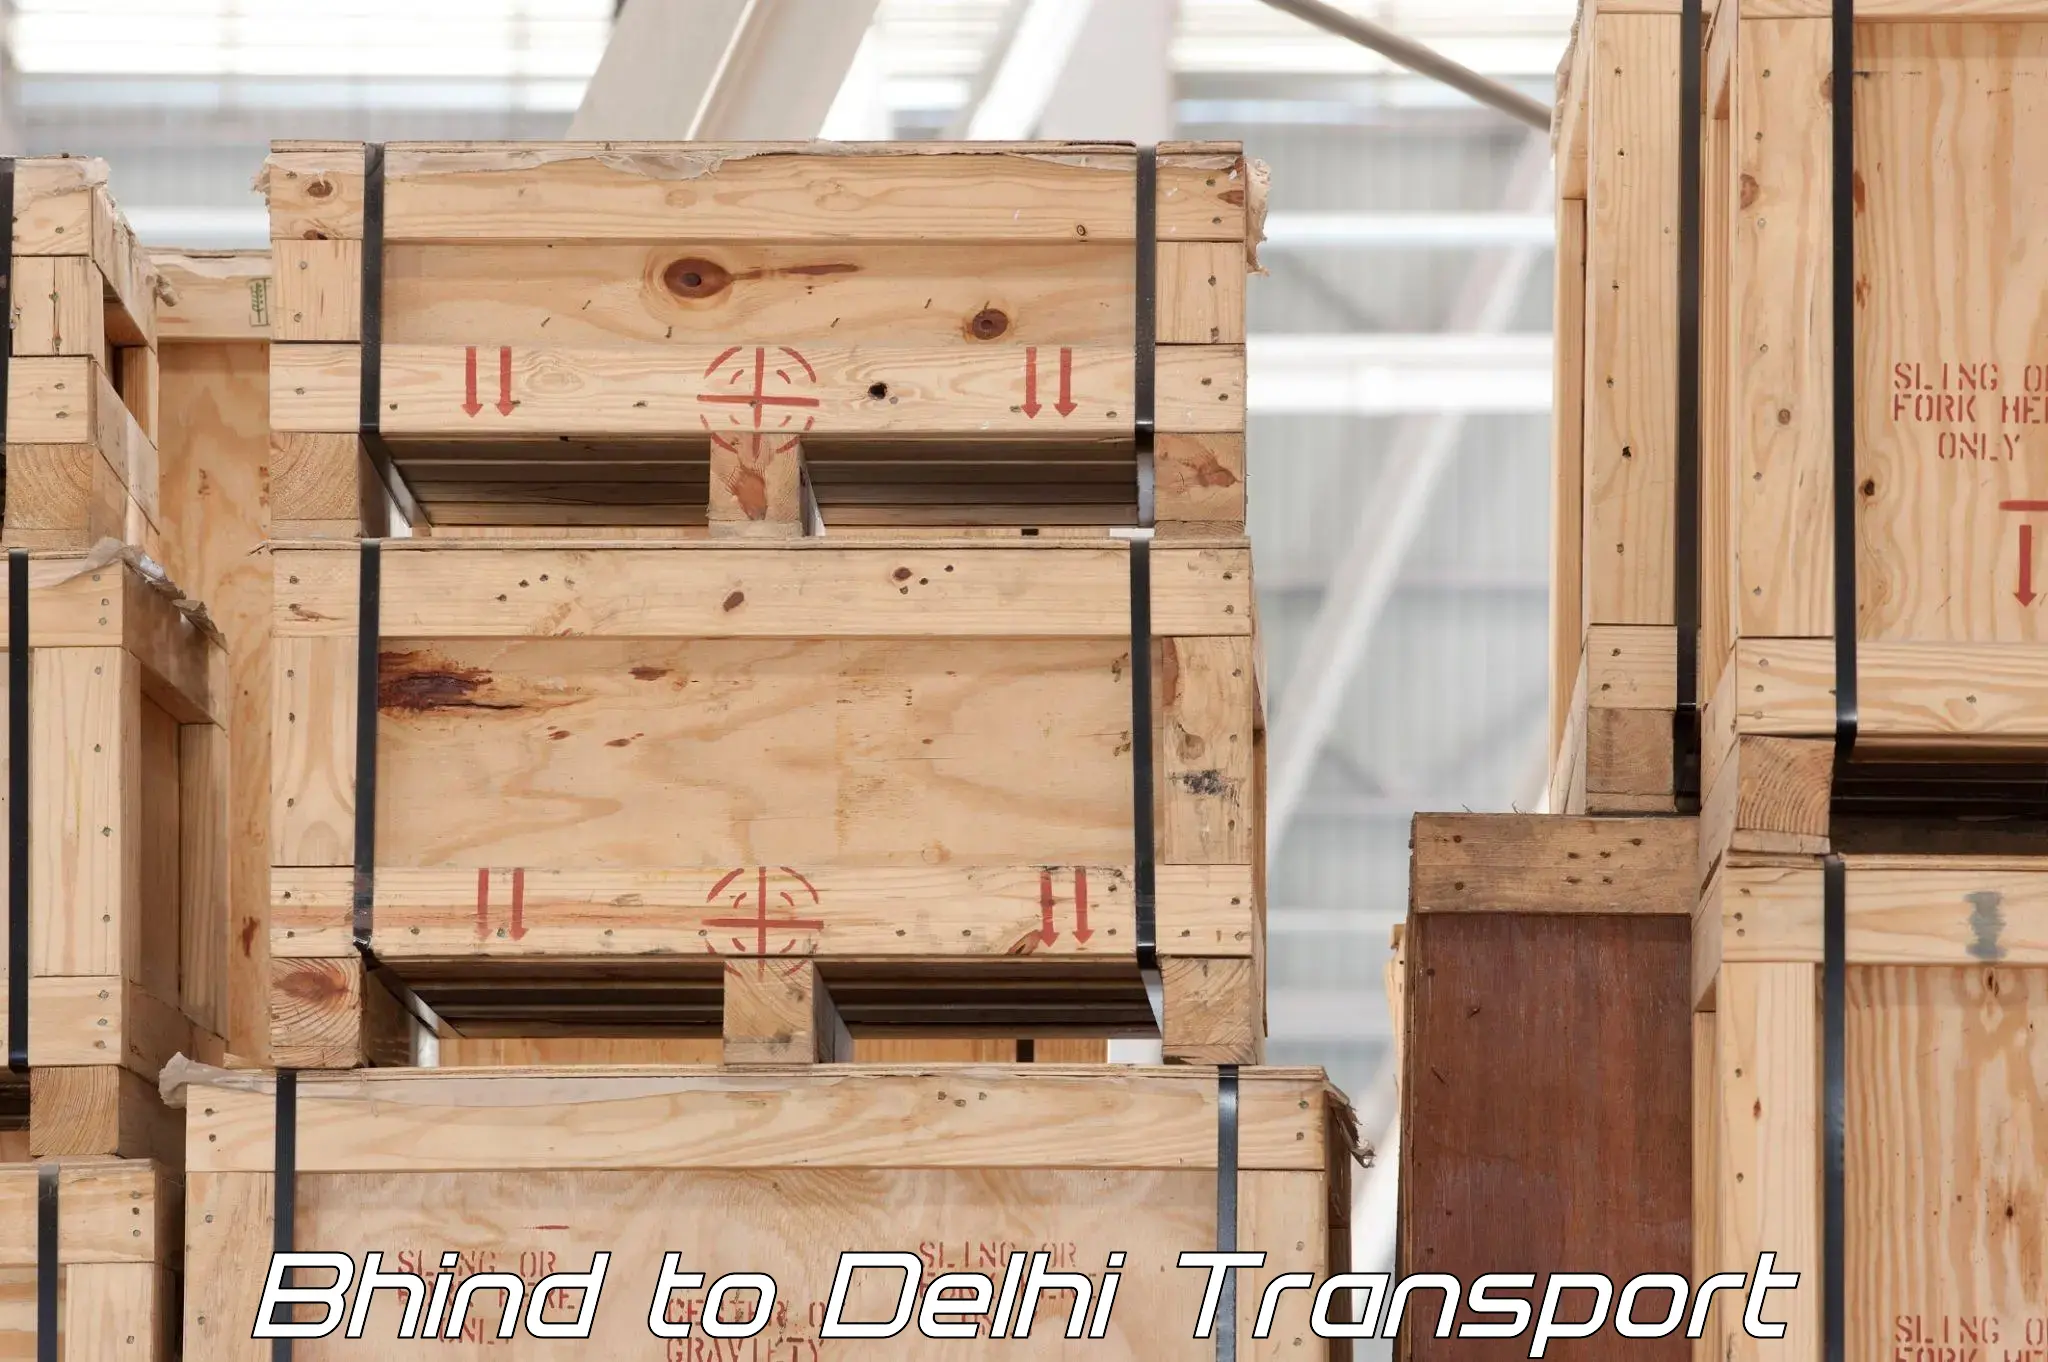 Nearest transport service Bhind to IIT Delhi